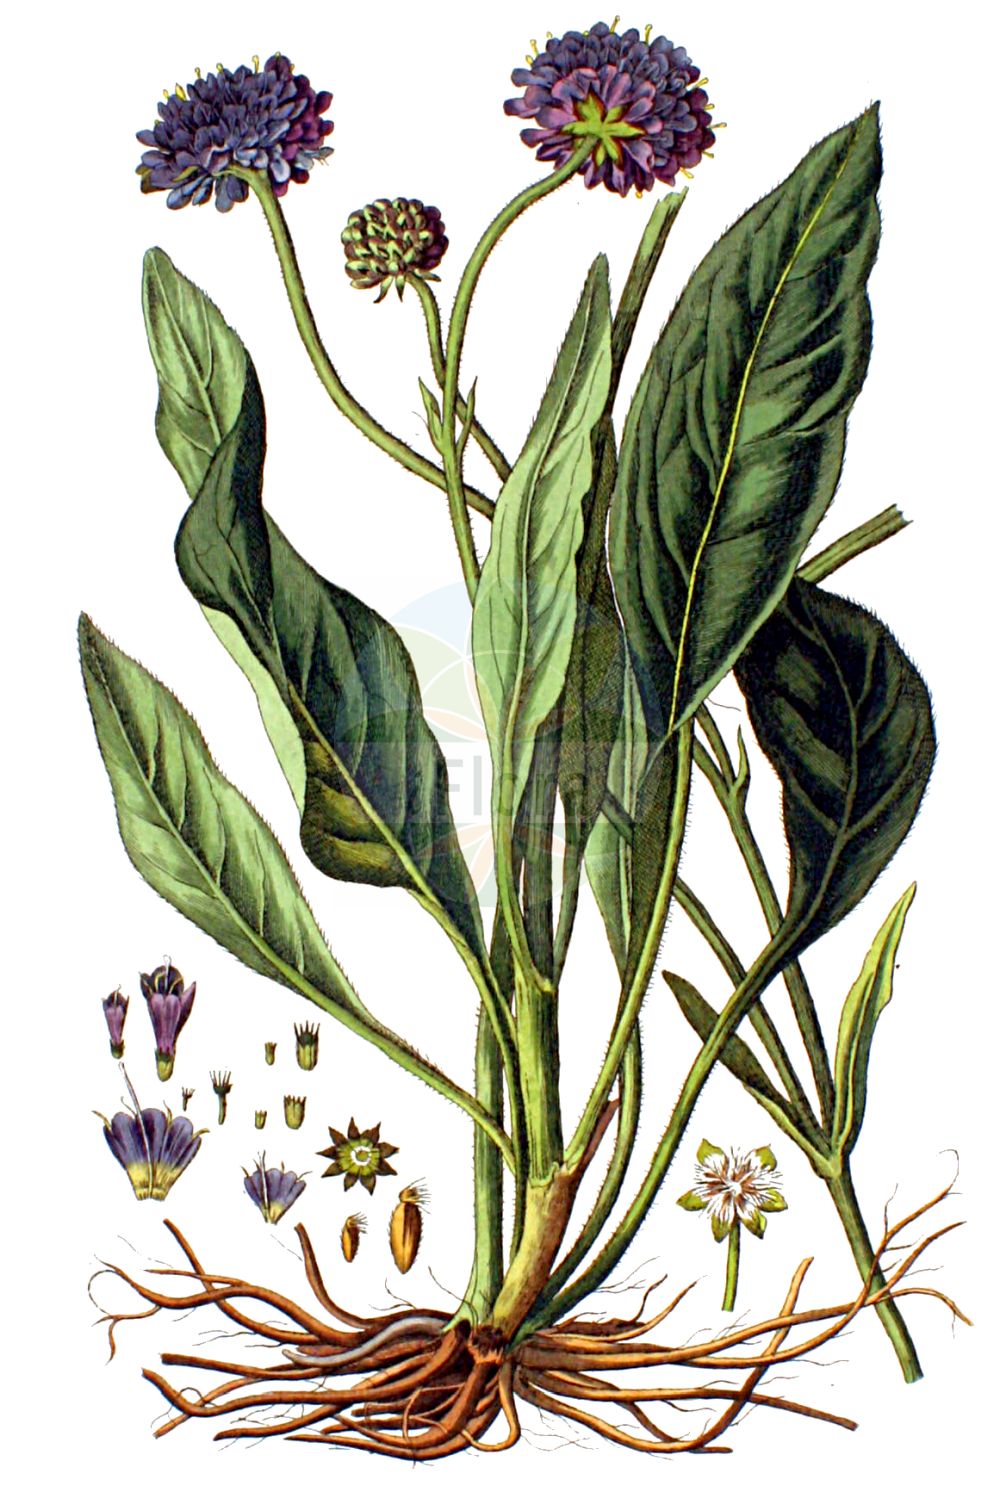 Historische Abbildung von Succisa pratensis (Gewöhnlicher Teufelsabbiß - Devil's-bit Scabious). Das Bild zeigt Blatt, Bluete, Frucht und Same. ---- Historical Drawing of Succisa pratensis (Gewöhnlicher Teufelsabbiß - Devil's-bit Scabious). The image is showing leaf, flower, fruit and seed.(Succisa pratensis,Gewöhnlicher Teufelsabbiß,Devil's-bit Scabious,Scabiosa glabrata,Scabiosa succisa,Succisa praemorsa,Succisa pratensis,Gewoehnlicher Teufelsabbiss,Devil's-bit Scabious,Devilsbit,Succisa,Teufelsabbiß,Devil’S Bit Scabious,Caprifoliaceae,Geißblattgewächse,Honeysuckle family,Blatt,Bluete,Frucht,Same,leaf,flower,fruit,seed,Kops (1800-1934))